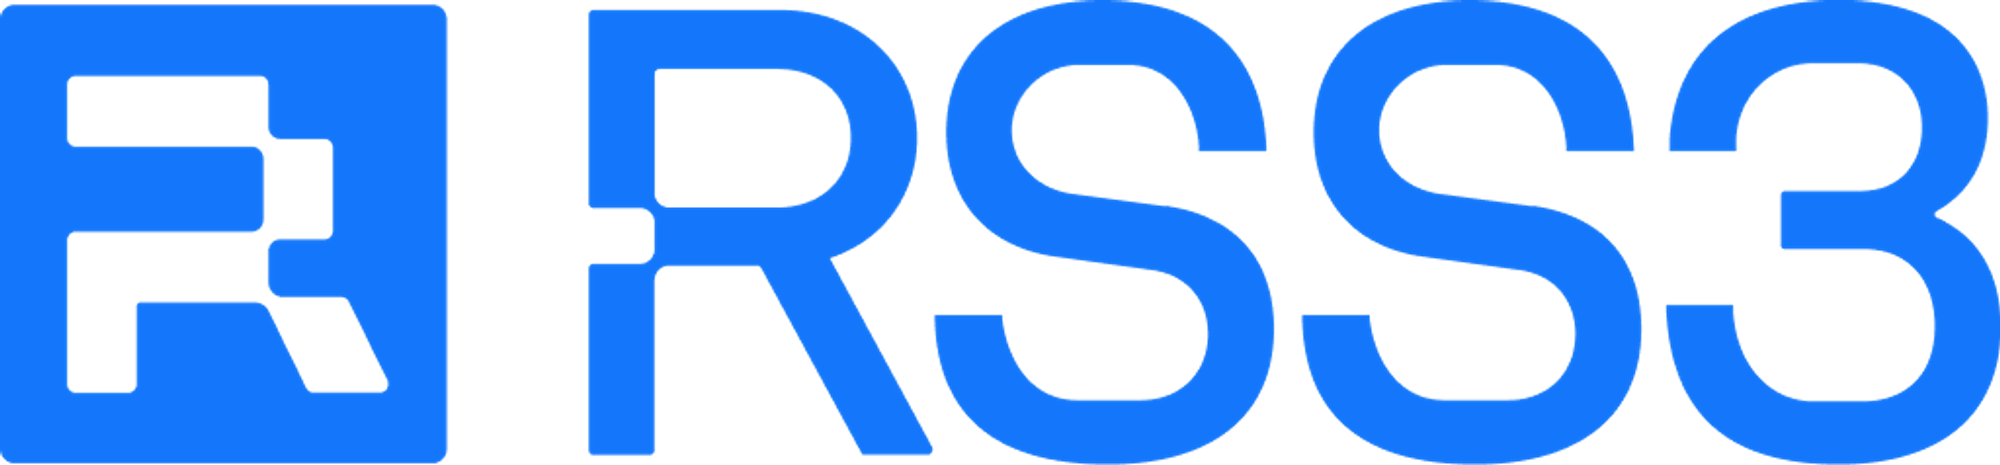 Logotipo de RSS3